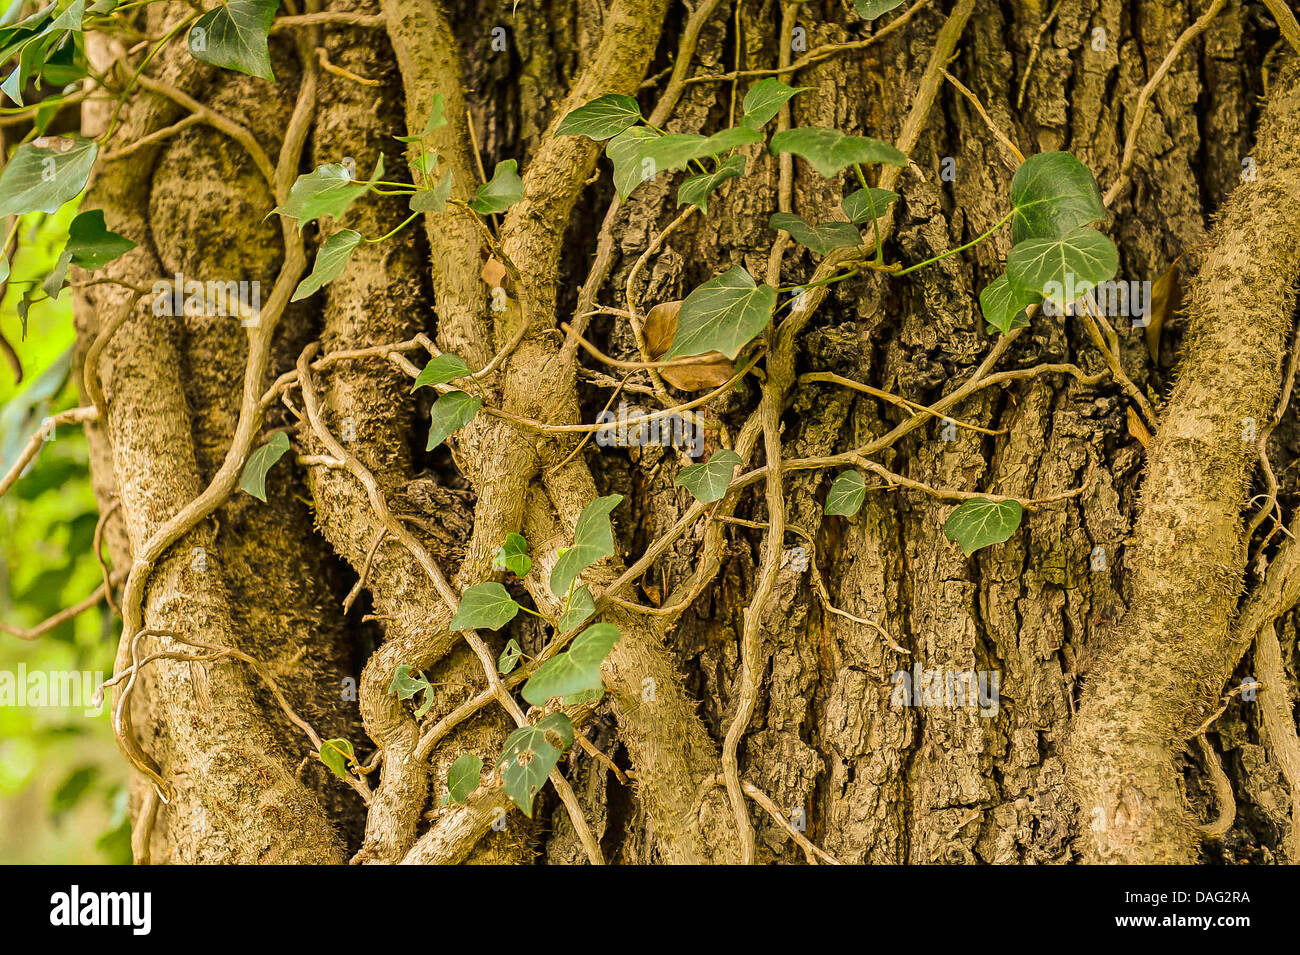 English ivy, comune edera (Hedera helix), i gambi spessi in corrispondenza di un tronco di quercia, in Germania, in Renania settentrionale-Vestfalia Foto Stock